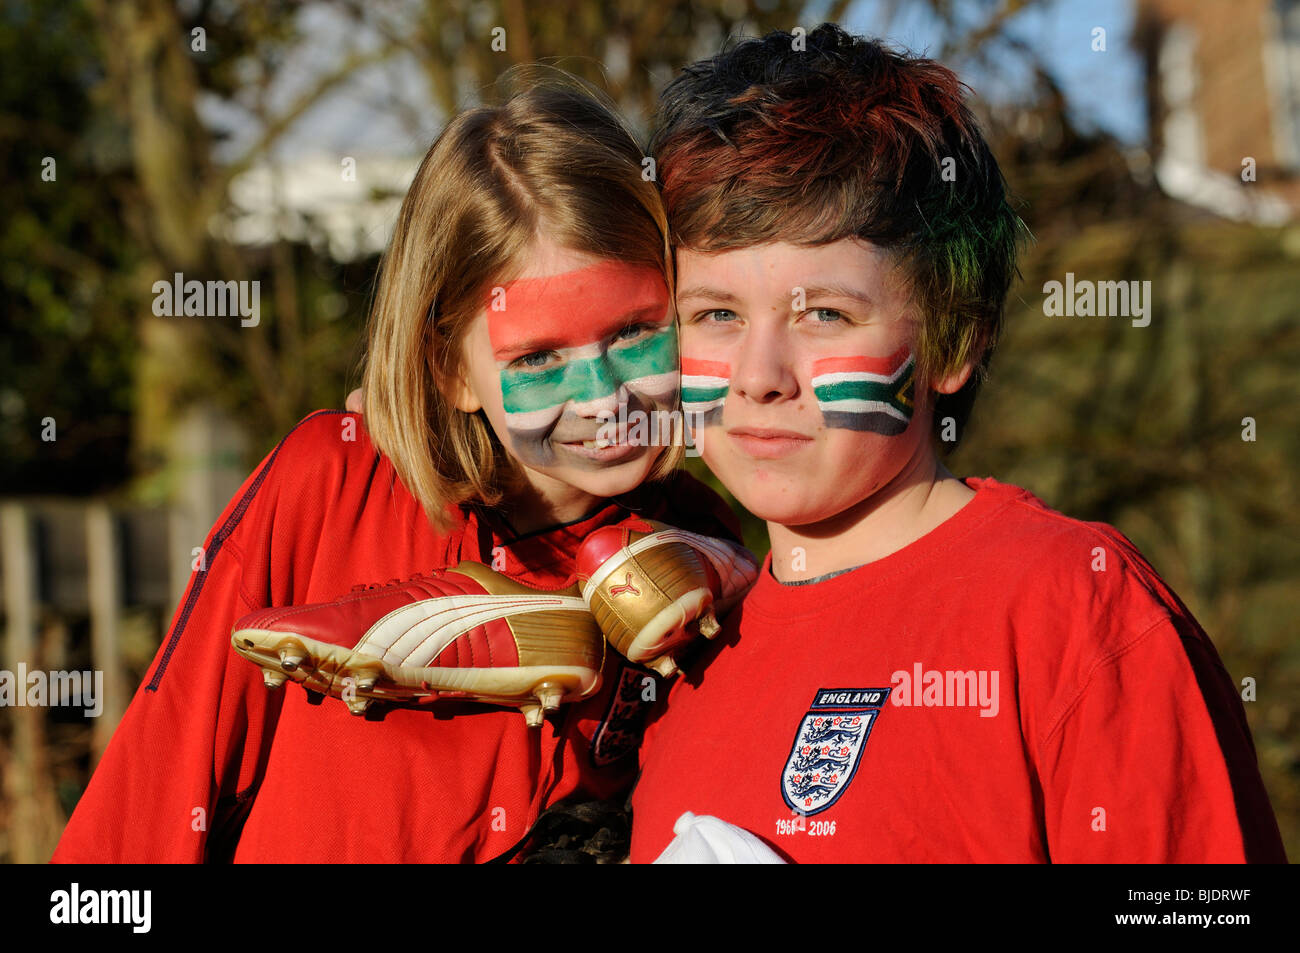 Los hinchas de fútbol joven chico y chica de Inglaterra camisas vestidos de rojo con el rostro pintado de caras en los colores de la bandera nacional de ZA Foto de stock